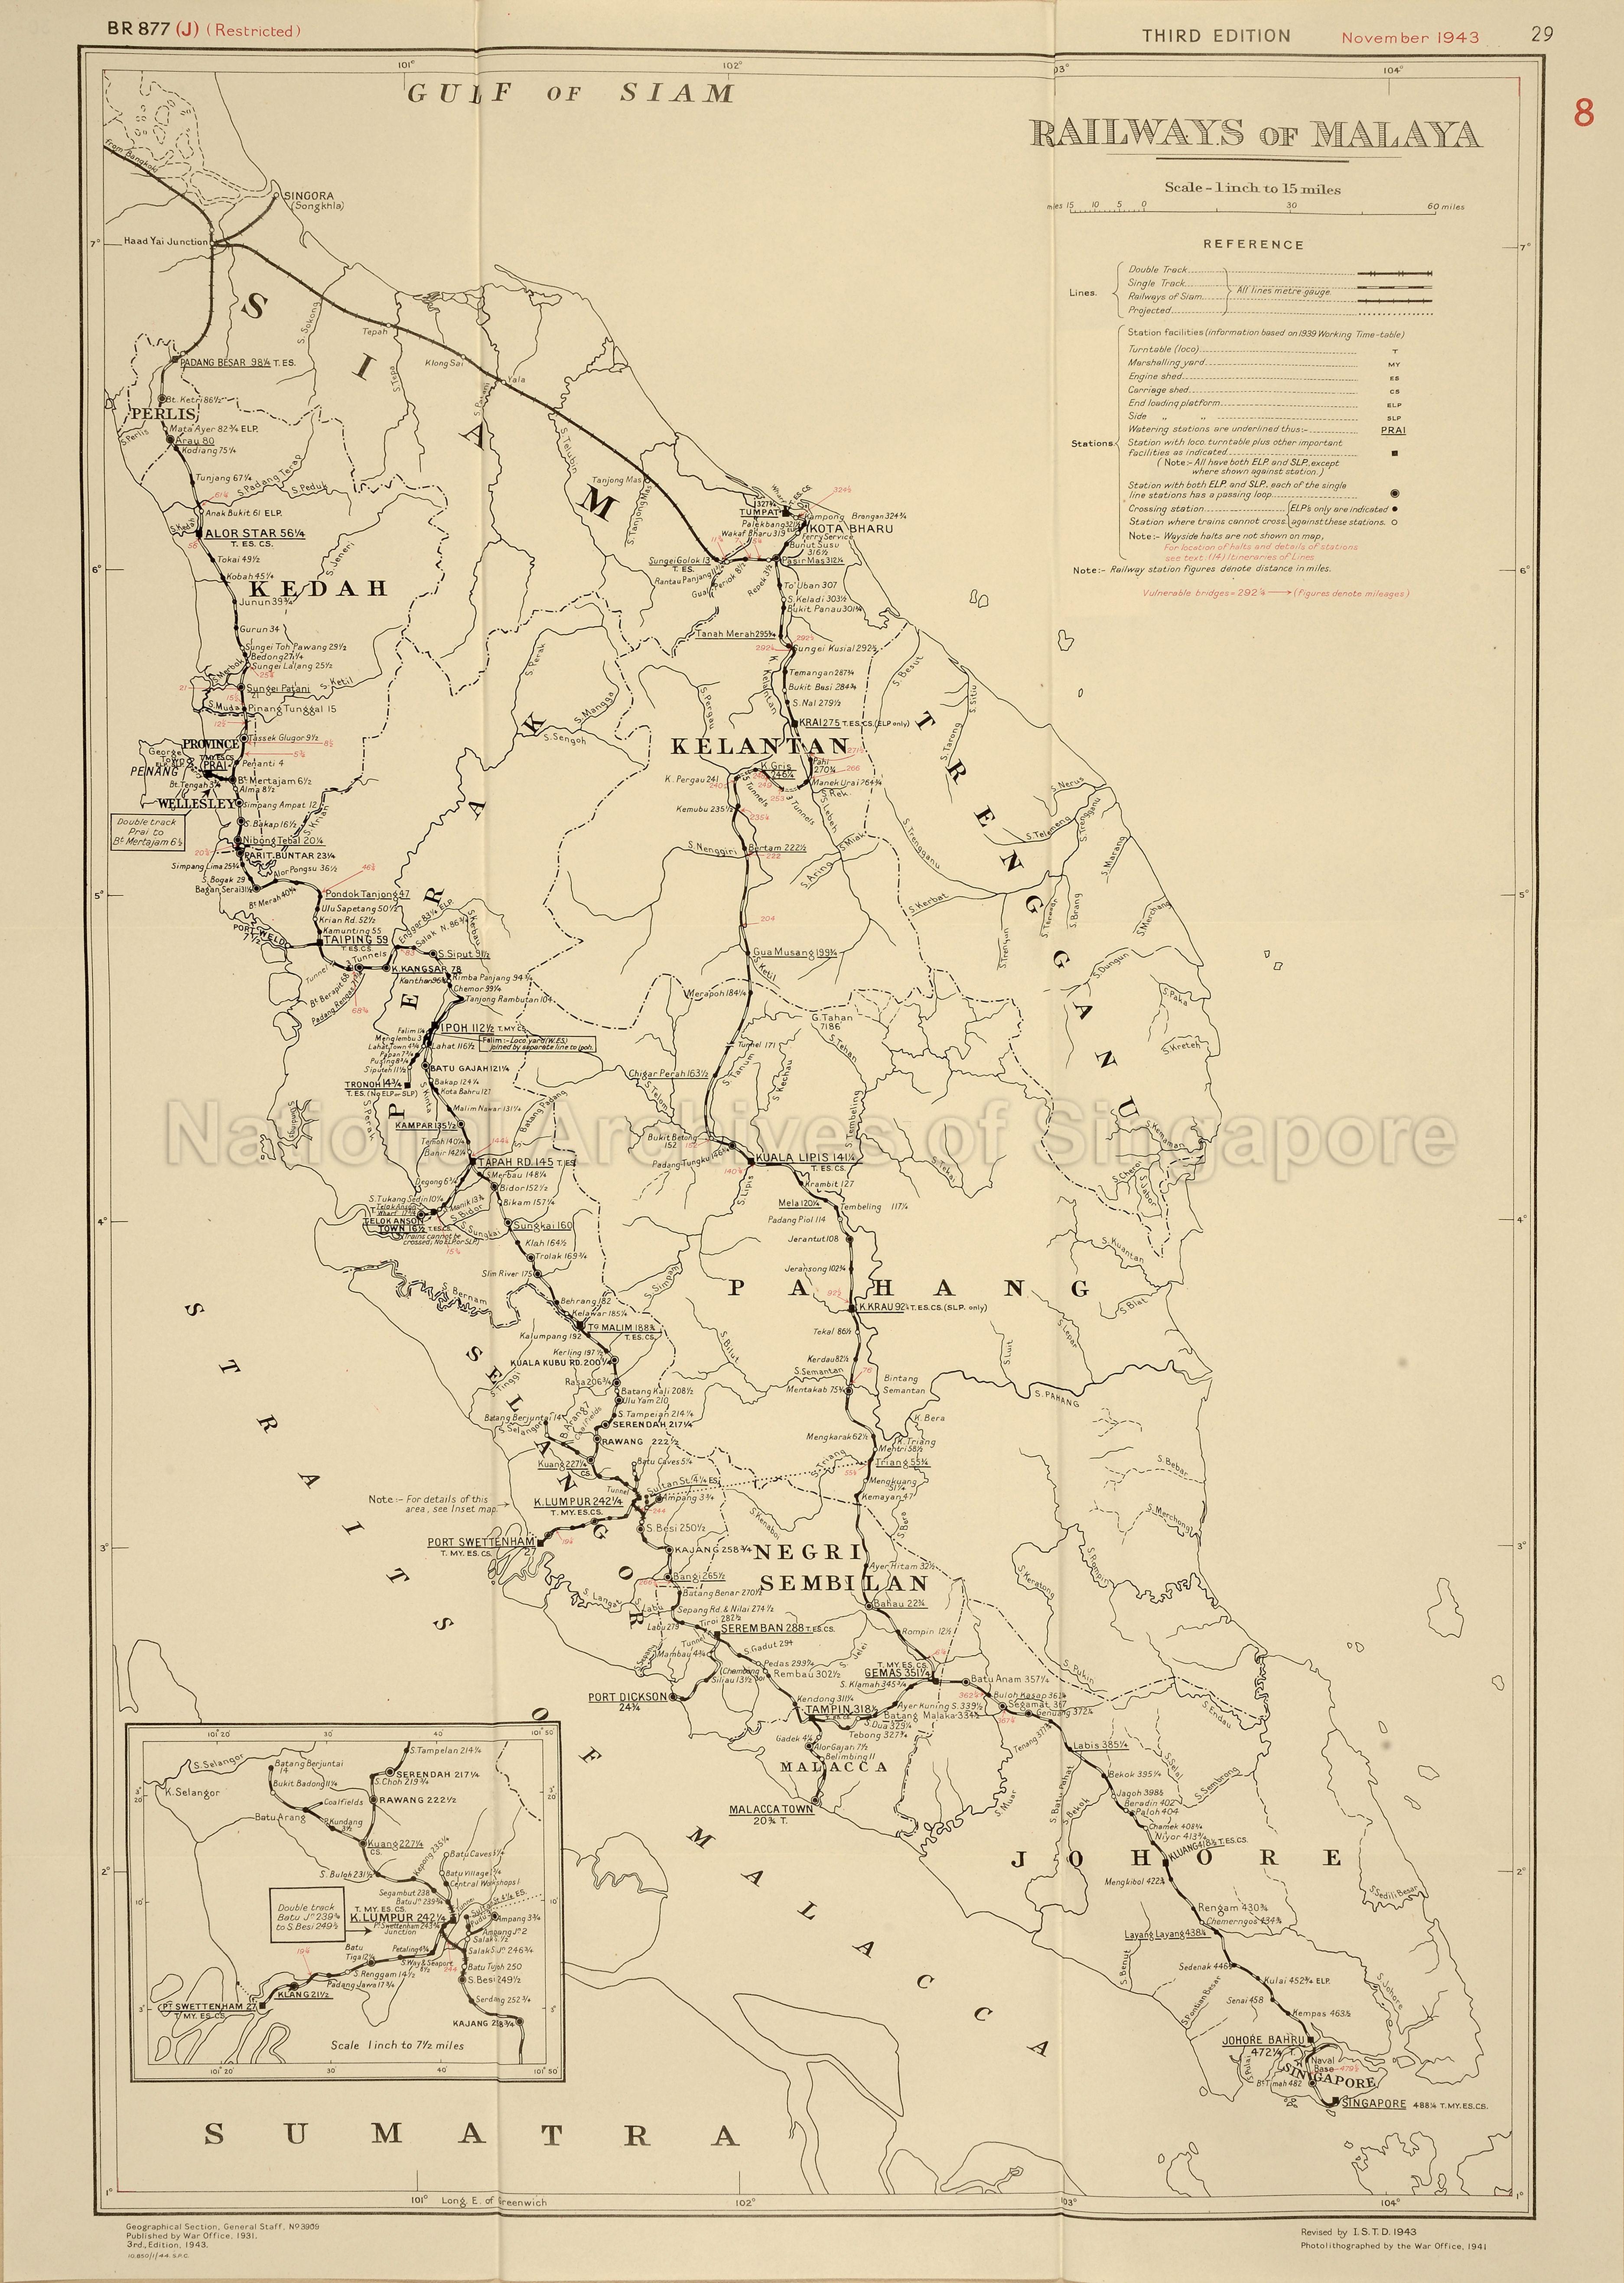 Railways of Malaya